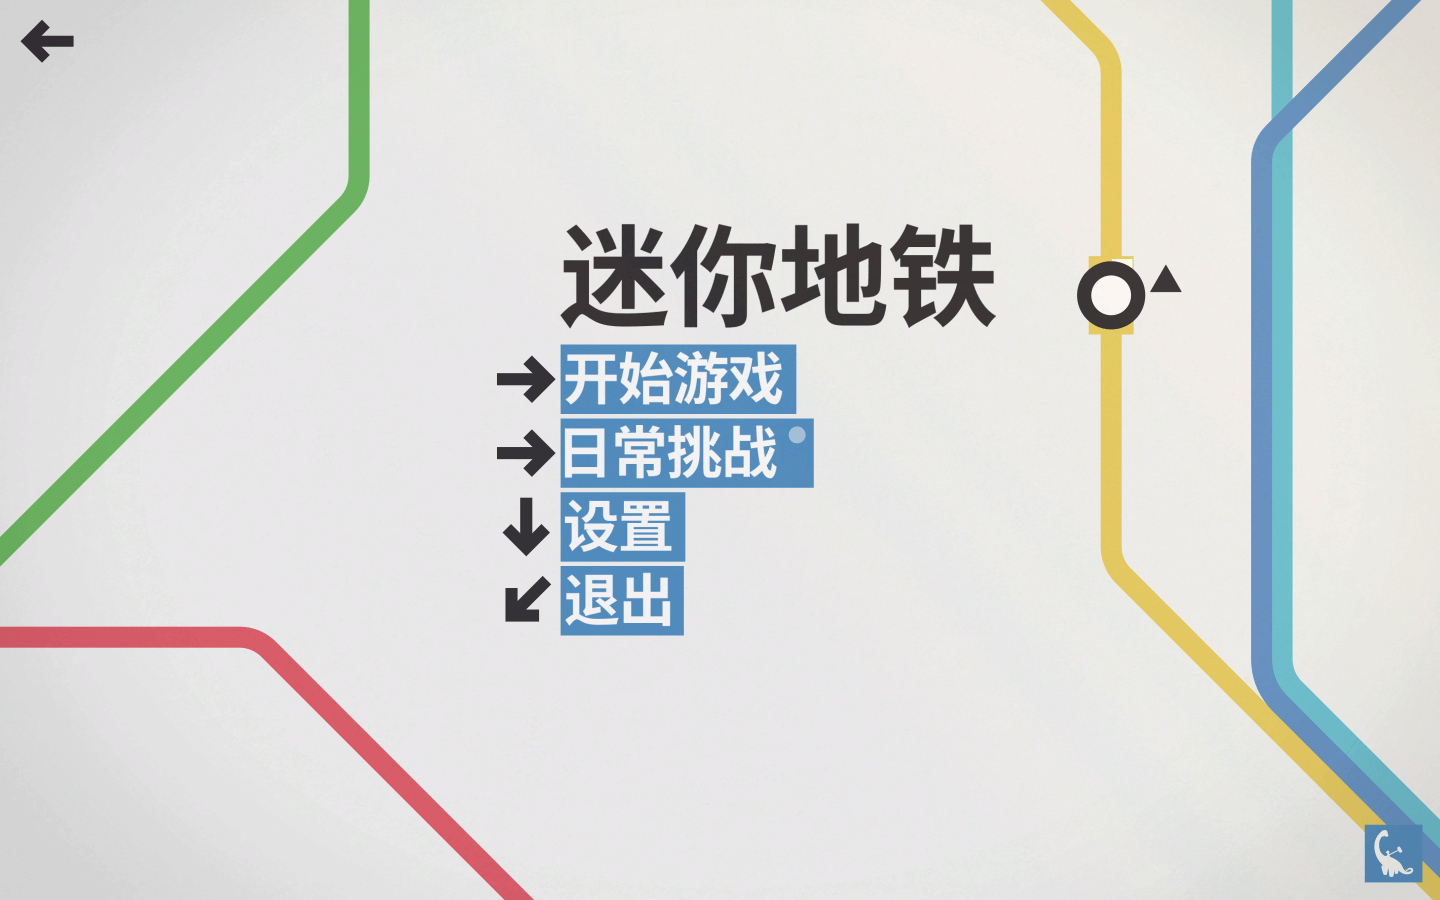 迷你地铁 mini metro mac 苹果电脑游戏 中文原生版